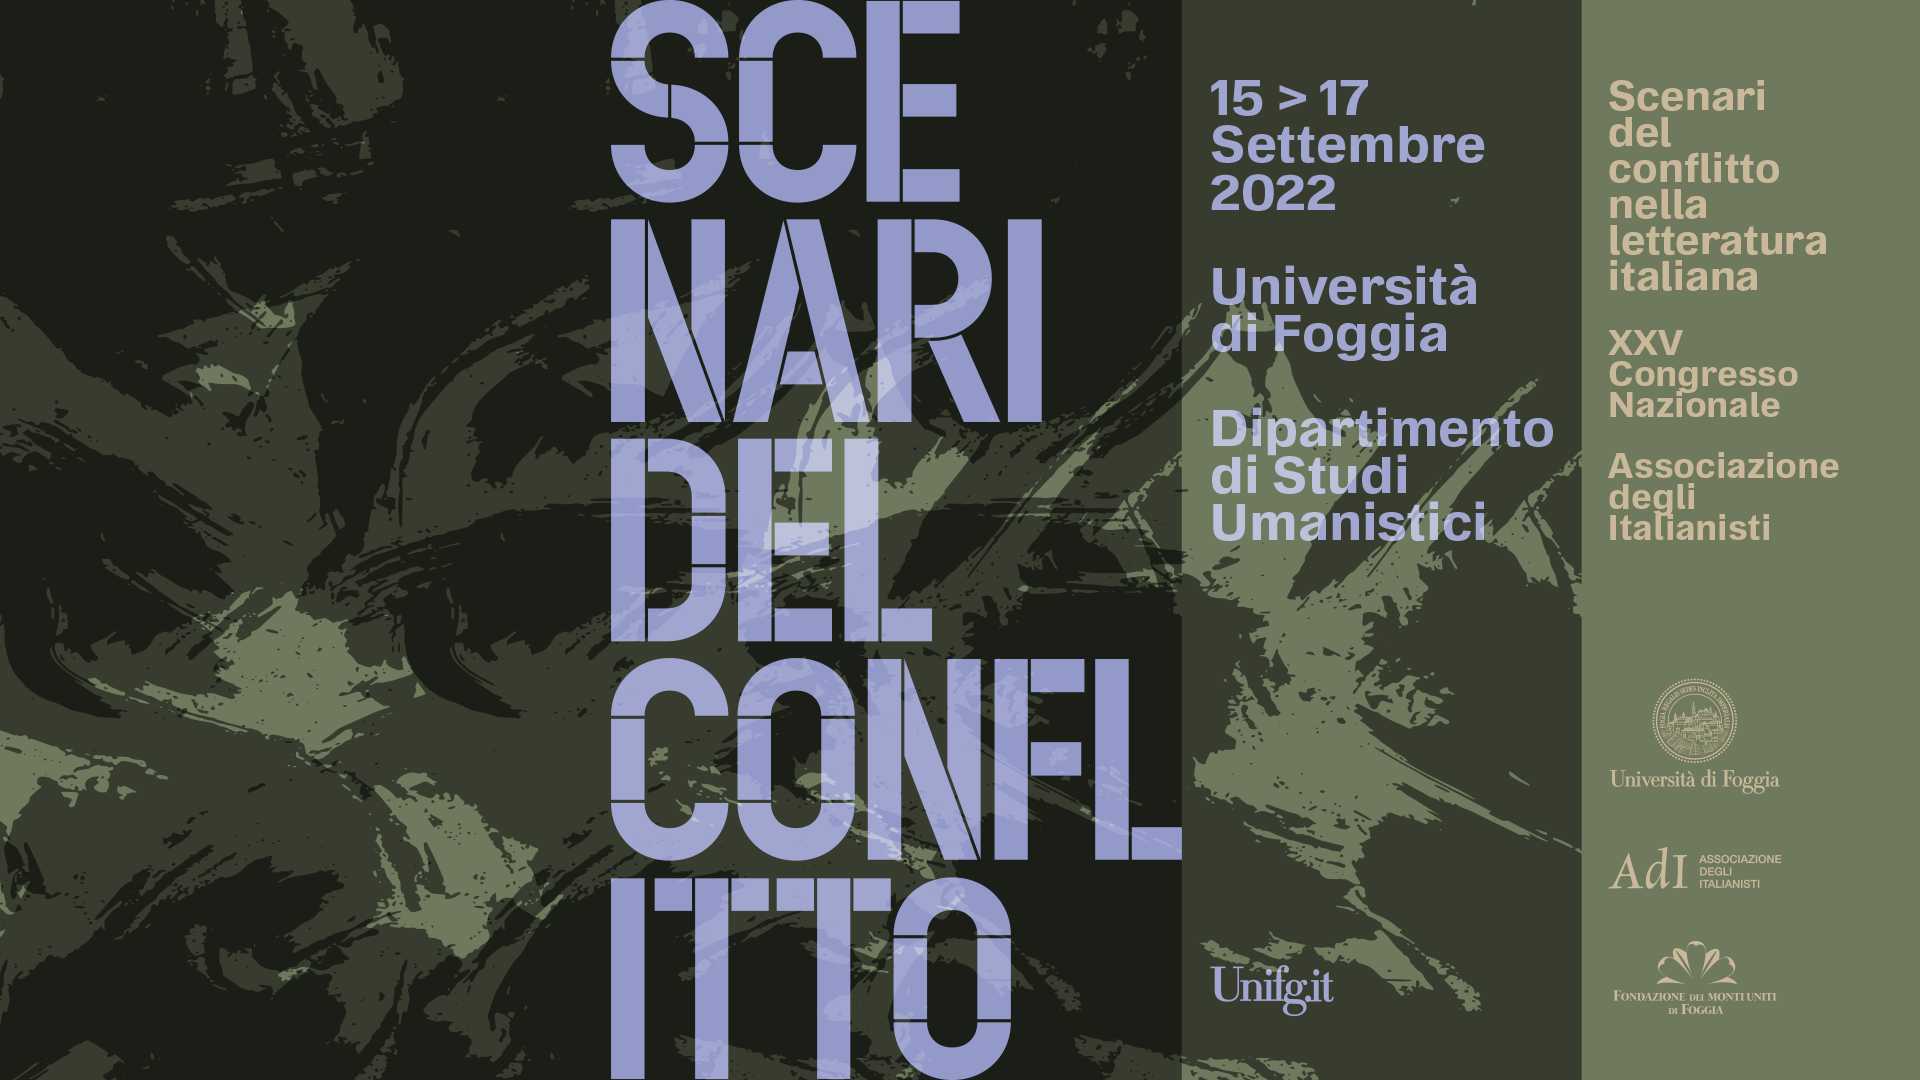 Scenari del conflitto nella letteratura italiana